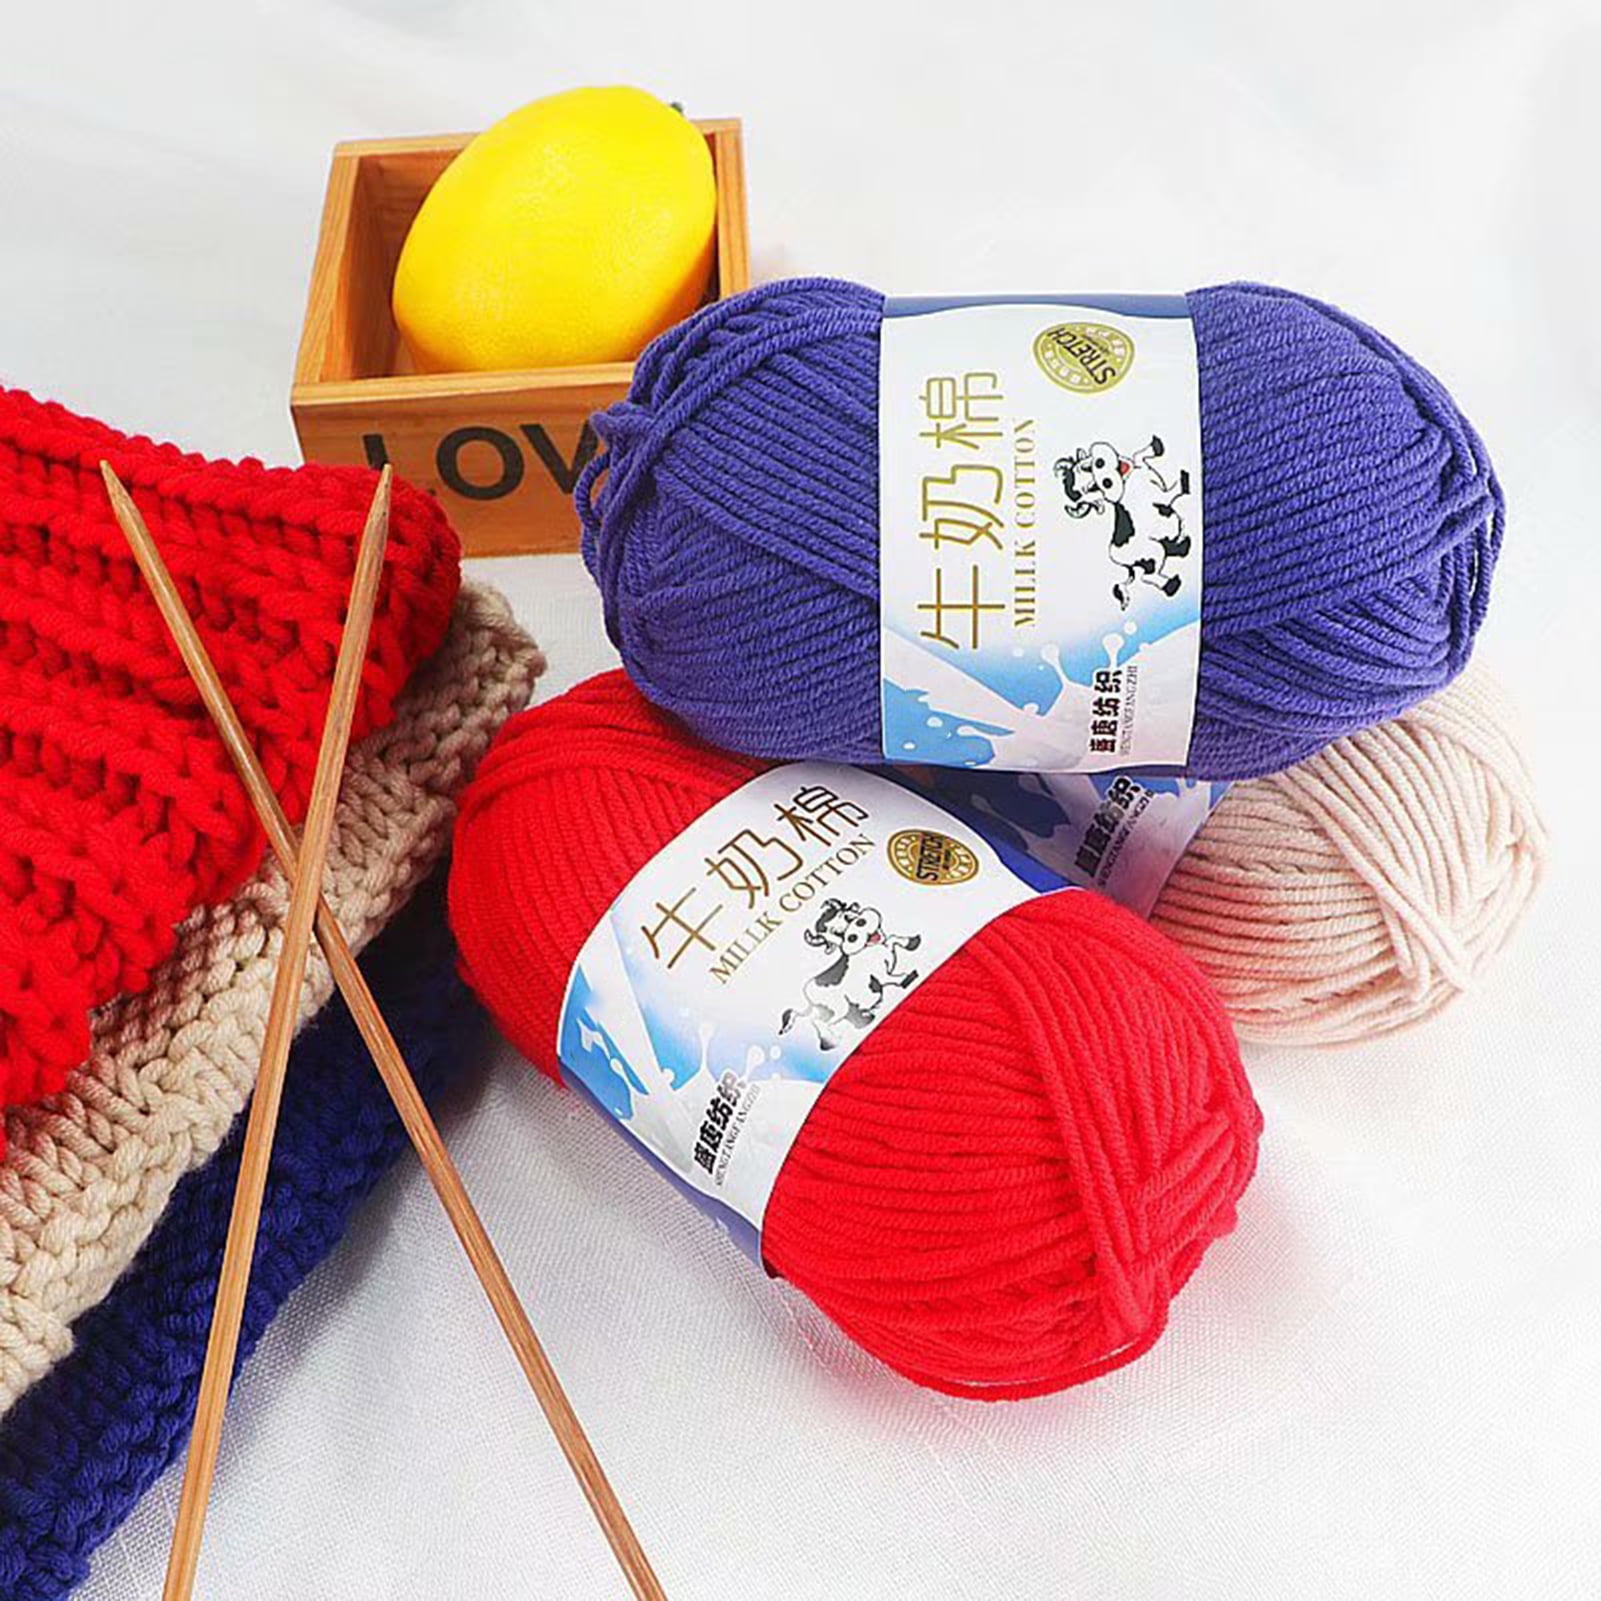 50g/Ball Crochet Cotton Yarn Lace Cotton Yarn Knitting Crochet Threads For  DIY Hand-knitting Yarn Accessaries Supplies - AliExpress